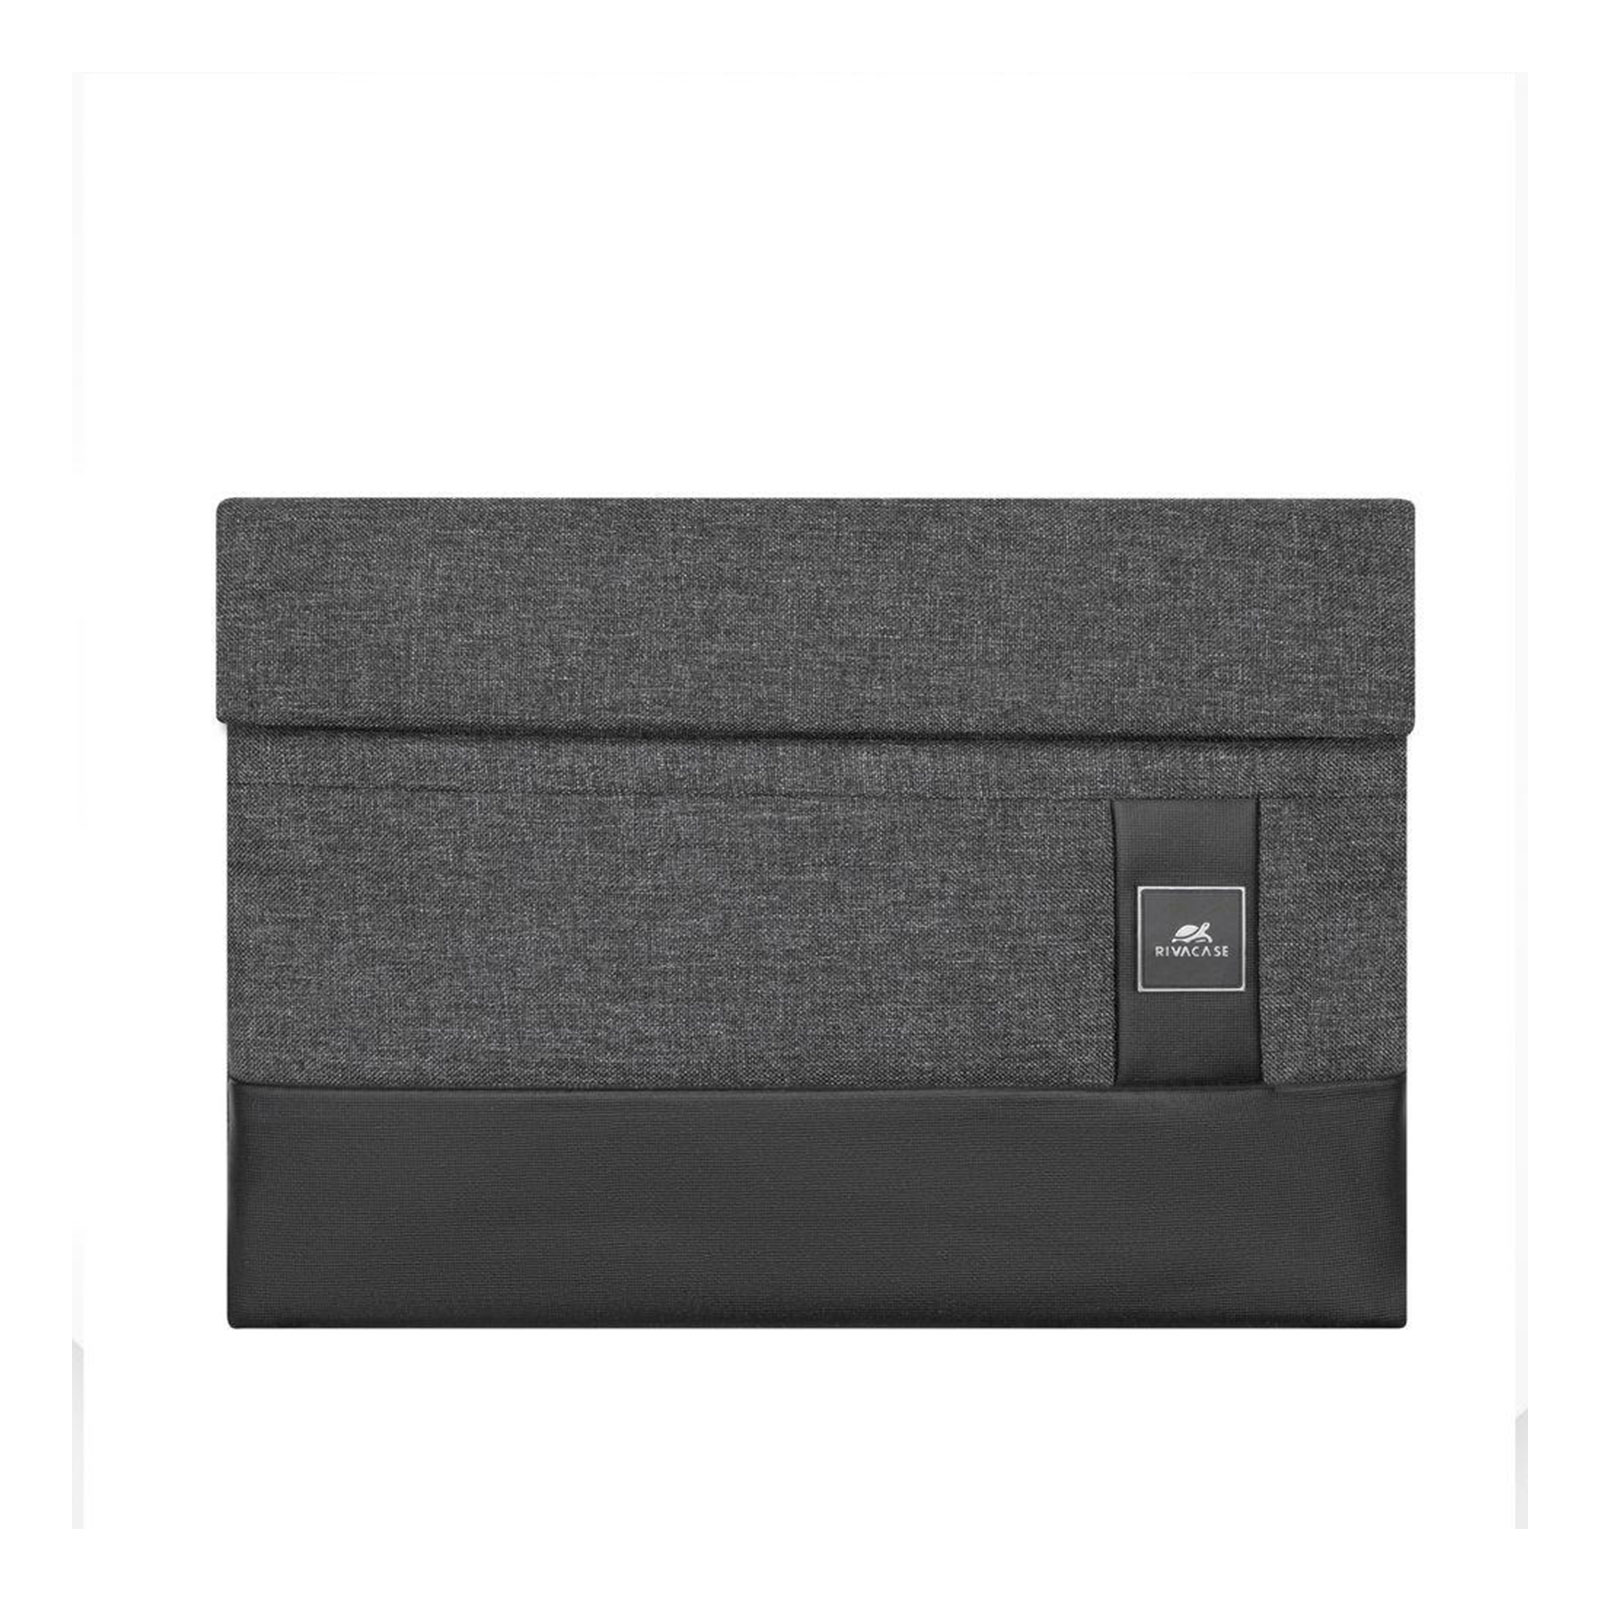 Rivacase 8802 Laptop-Tasche Lantau 13,3'', schwarz melange (Passend für MacBook Pro / MacBook Air 13)